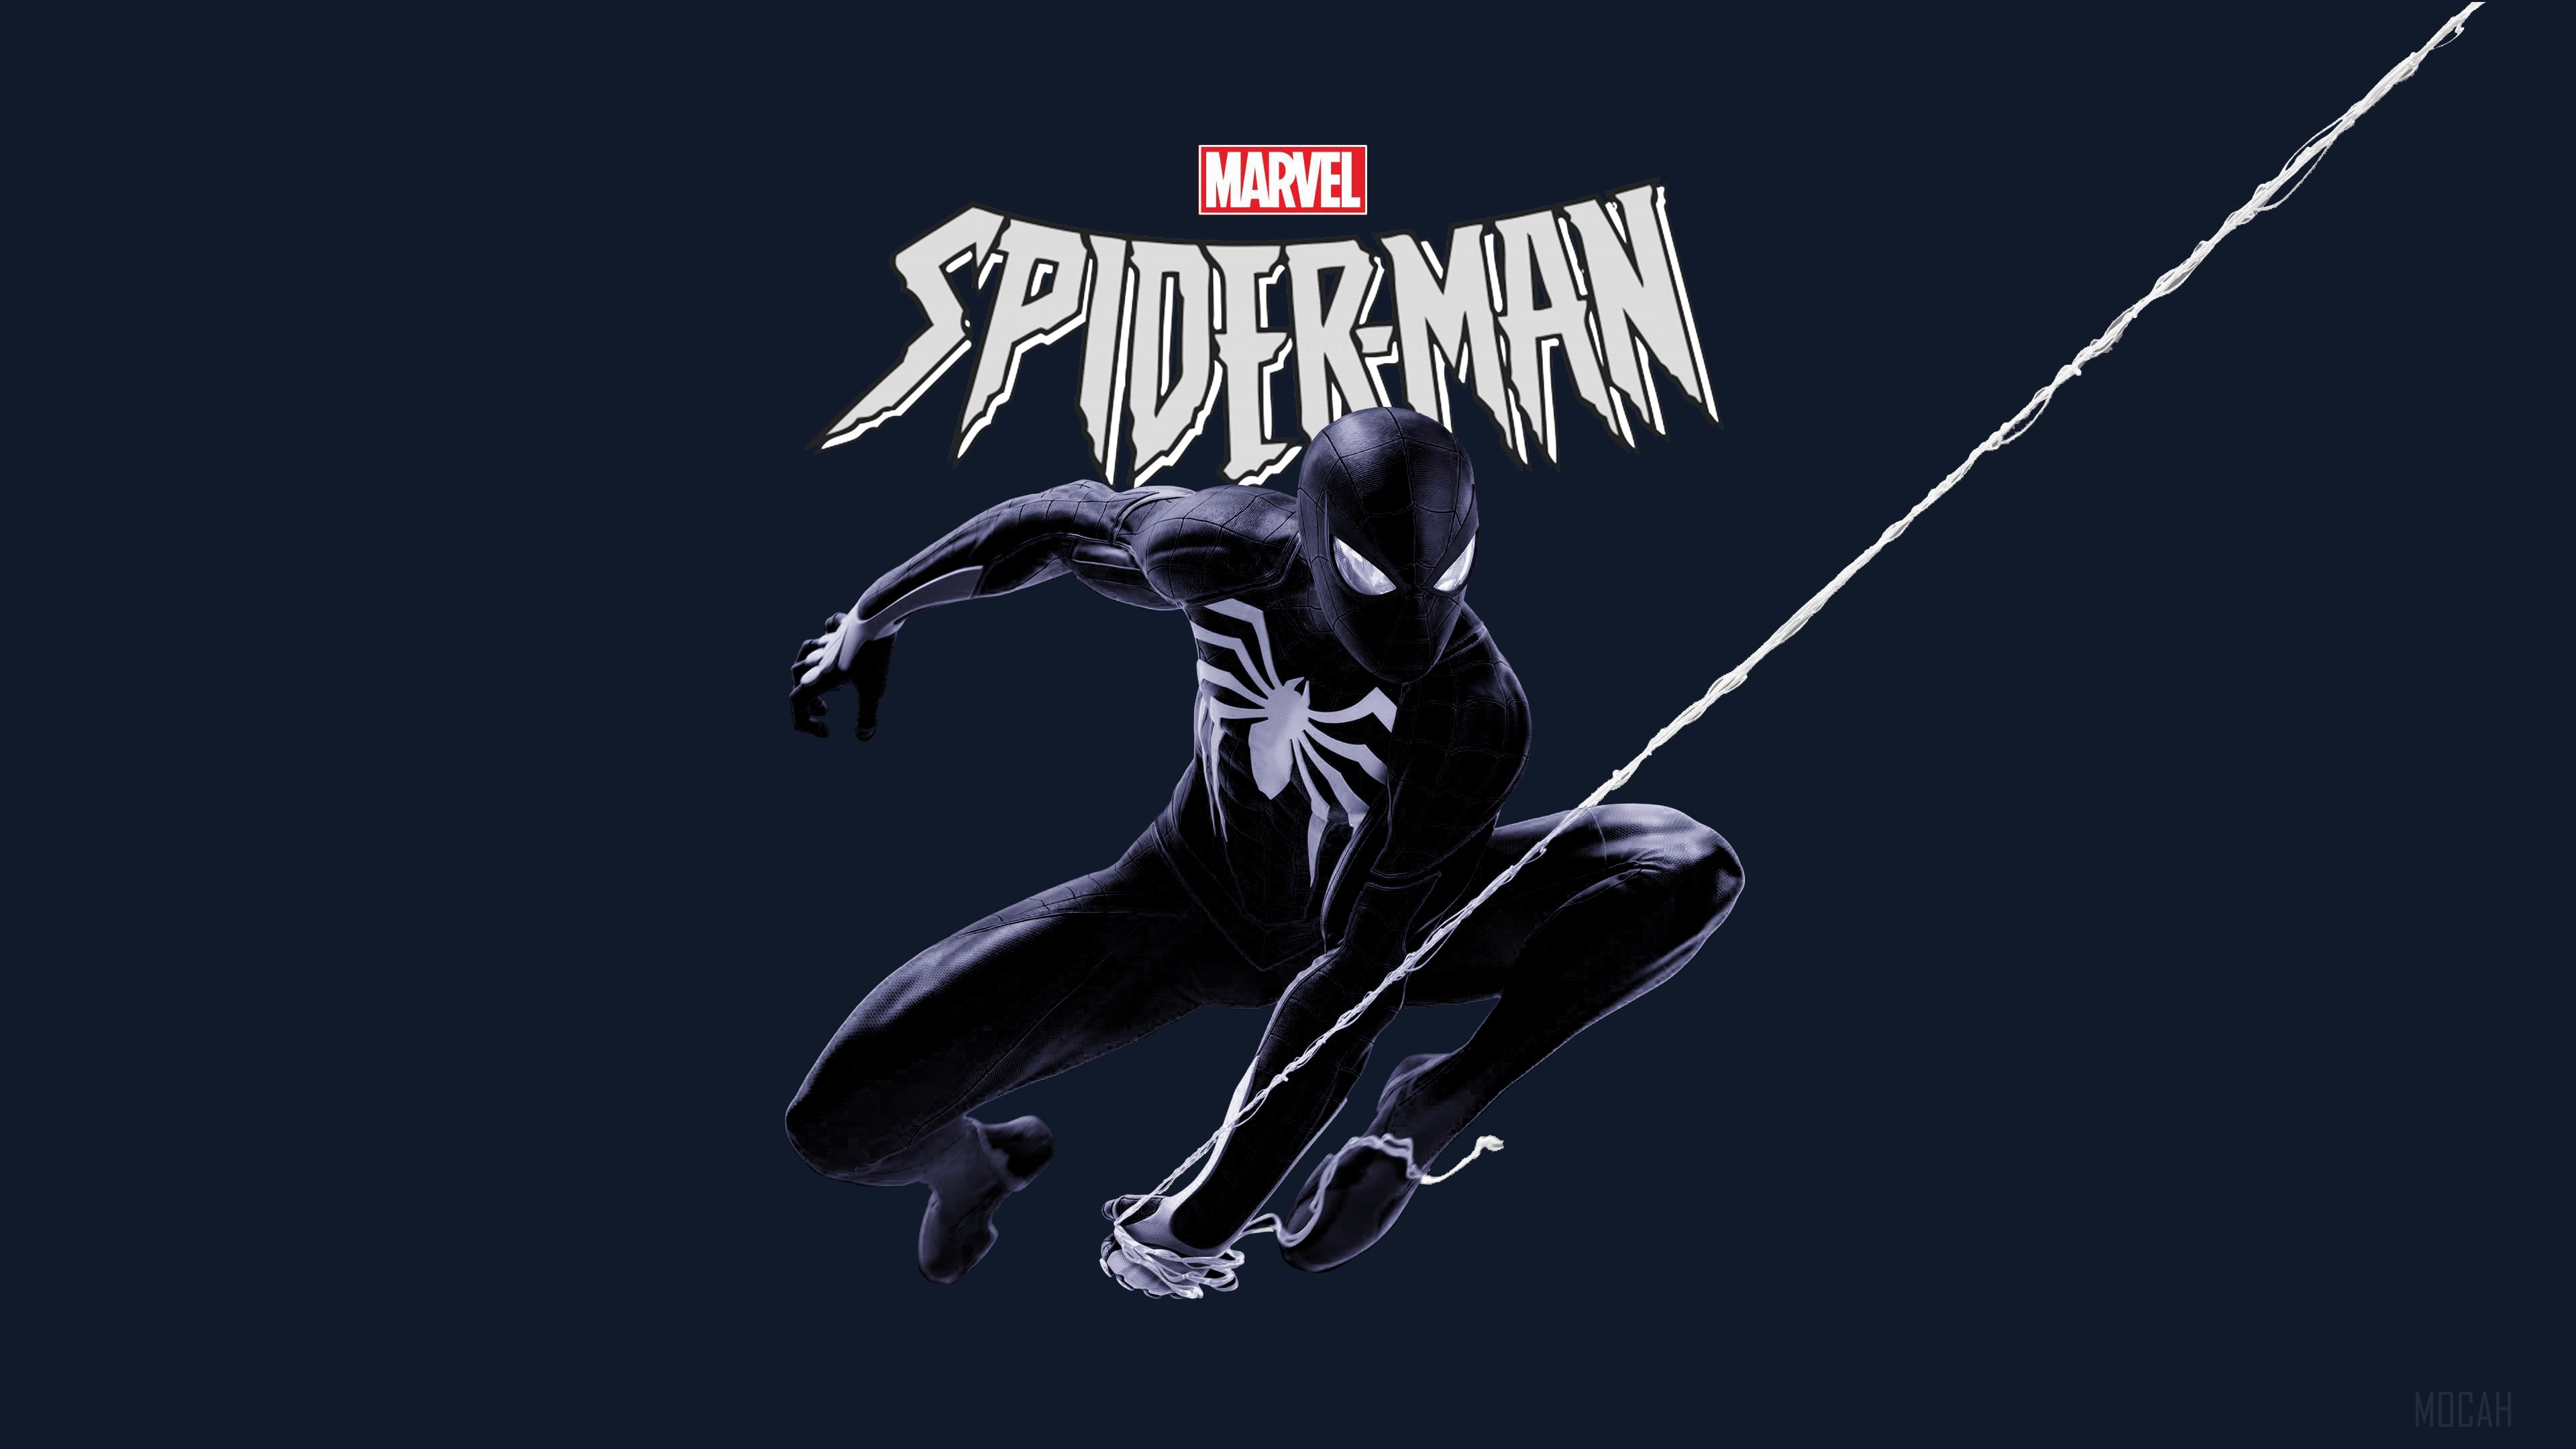 Marvel Black Spiderman 4k wallpaper. Mocah HD Wallpaper